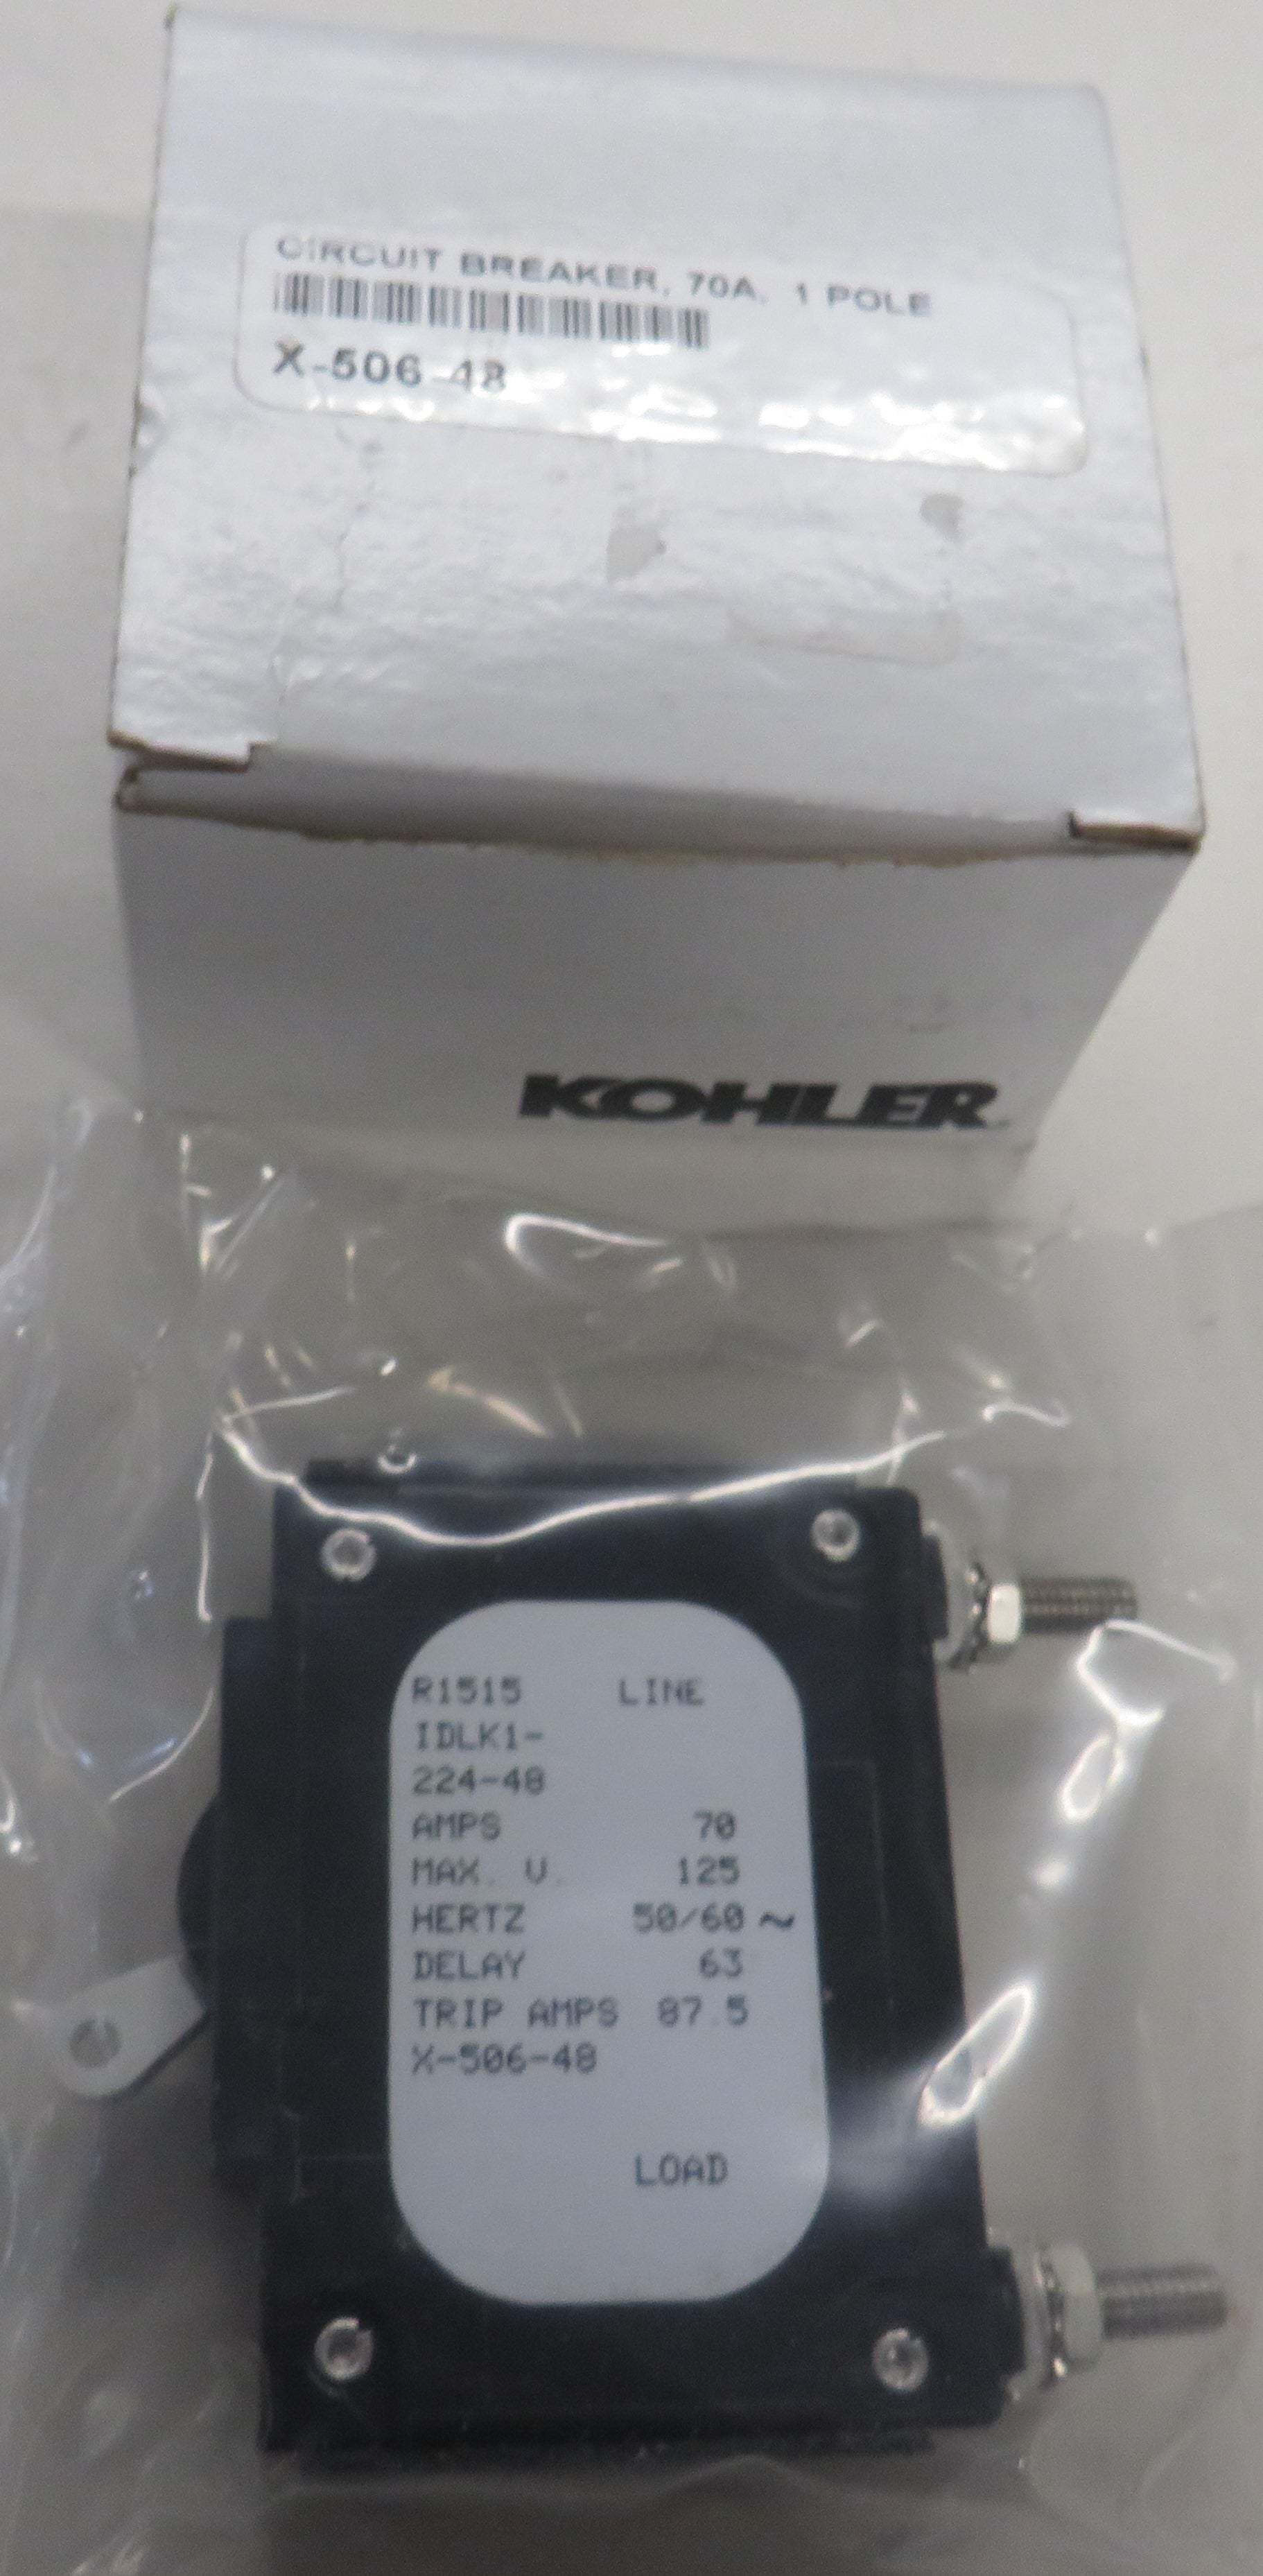 Kohler X-506-48 Circuit Breaker 70A, 250V 1 Pole White Handle 